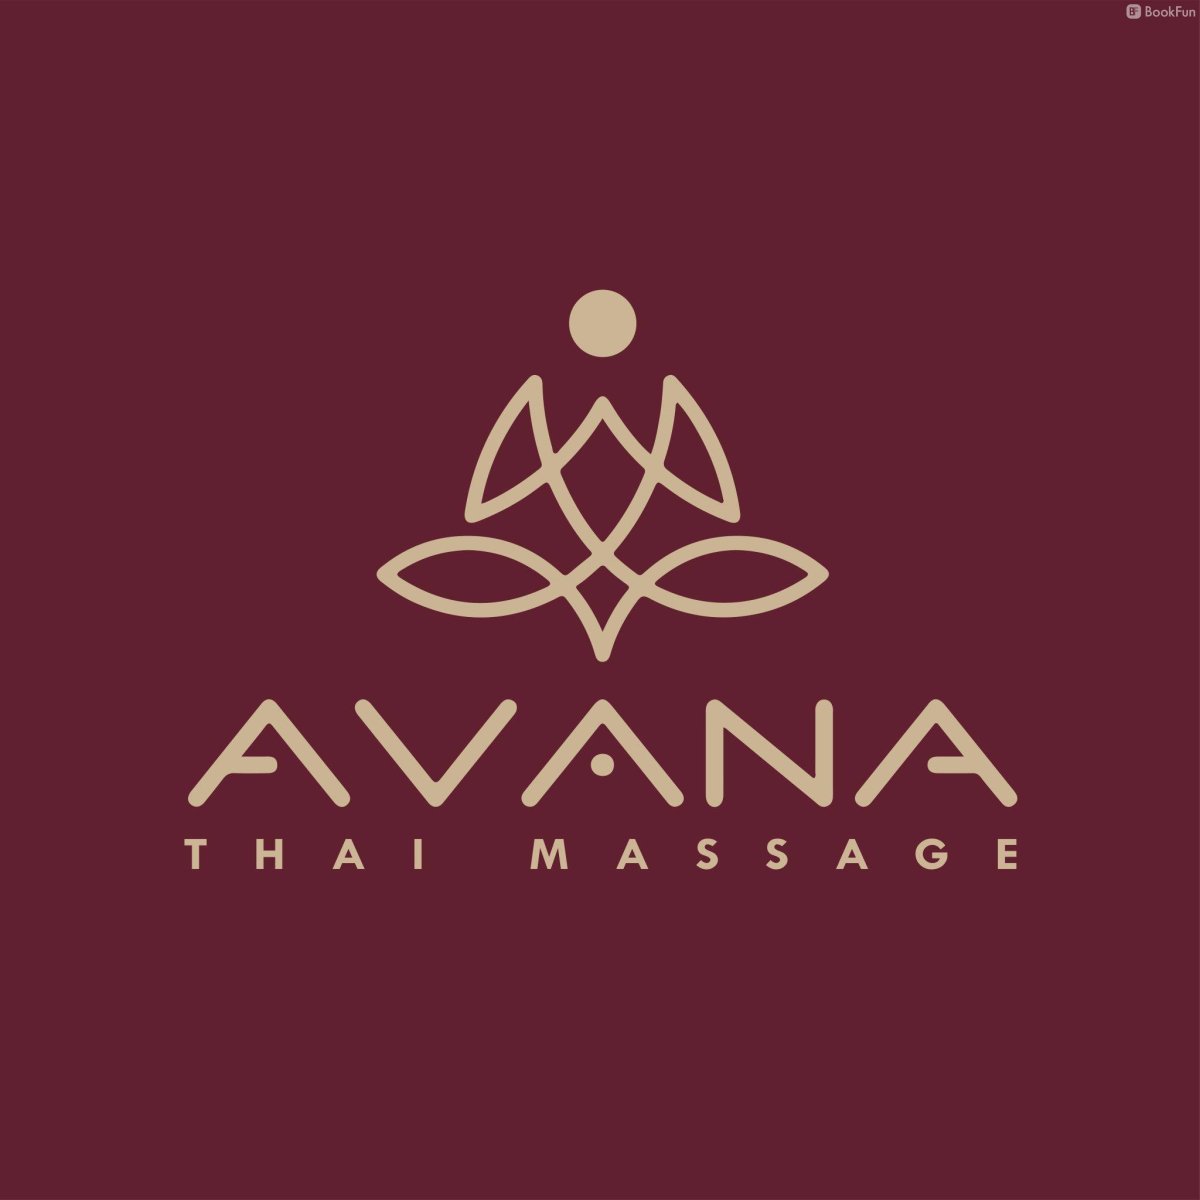 Avana Thai Massage